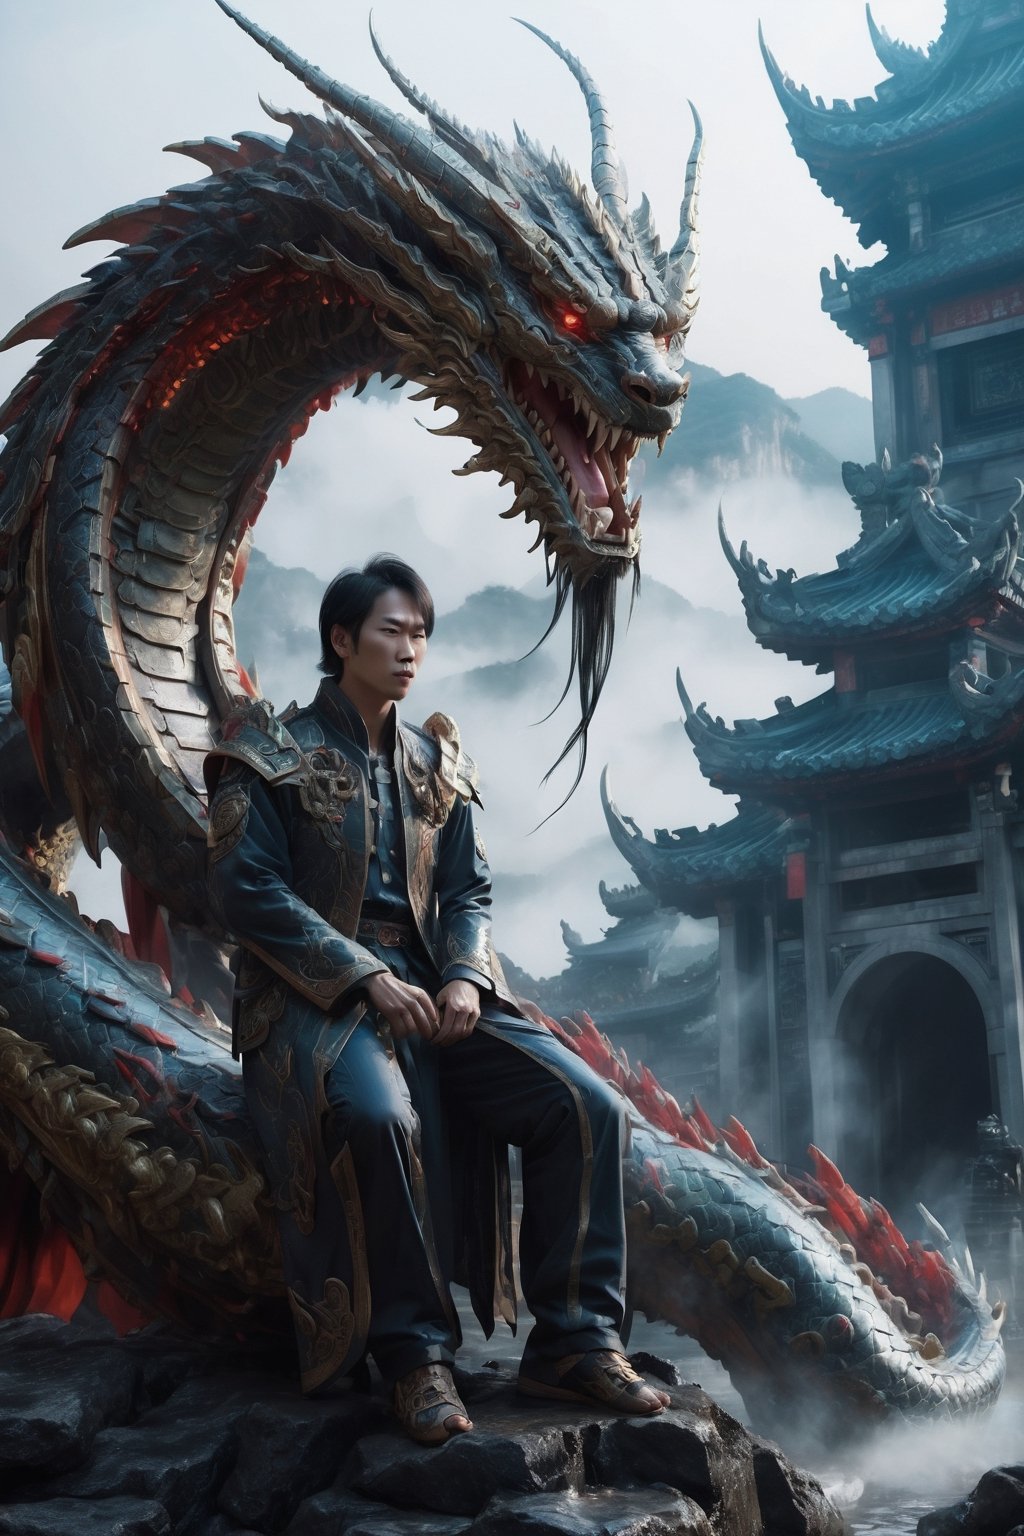 asian men go a long hunting and see real dragon 
,Strange Dragon,LegendDarkFantasy,chinese dragon,Mecha